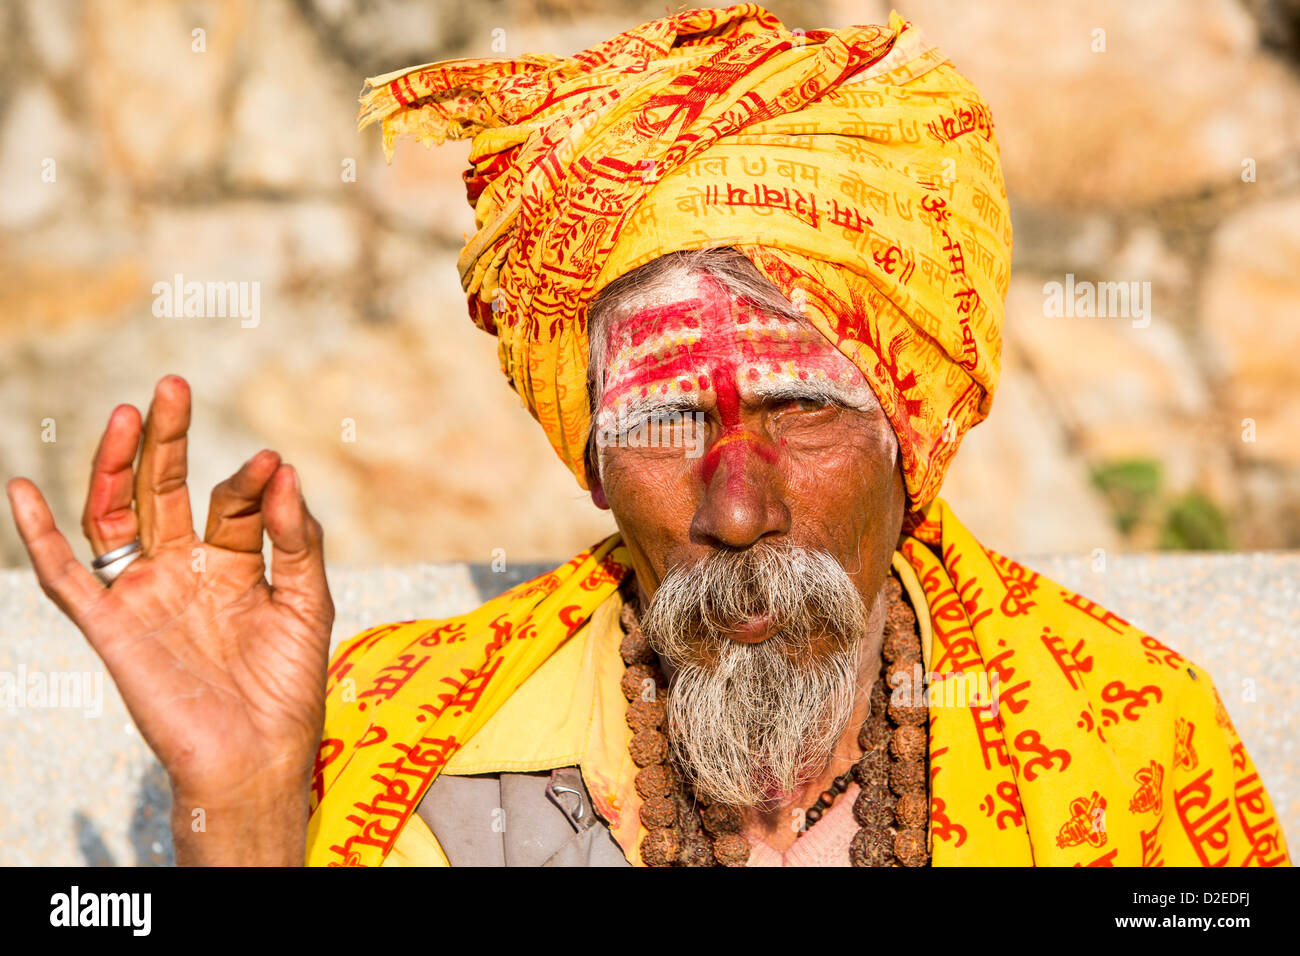 Sadhu hindou ou saint homme à Katmandou, au Népal. Sadhus sont des hommes qui ont renoncé à tous les attachements matériels Banque D'Images